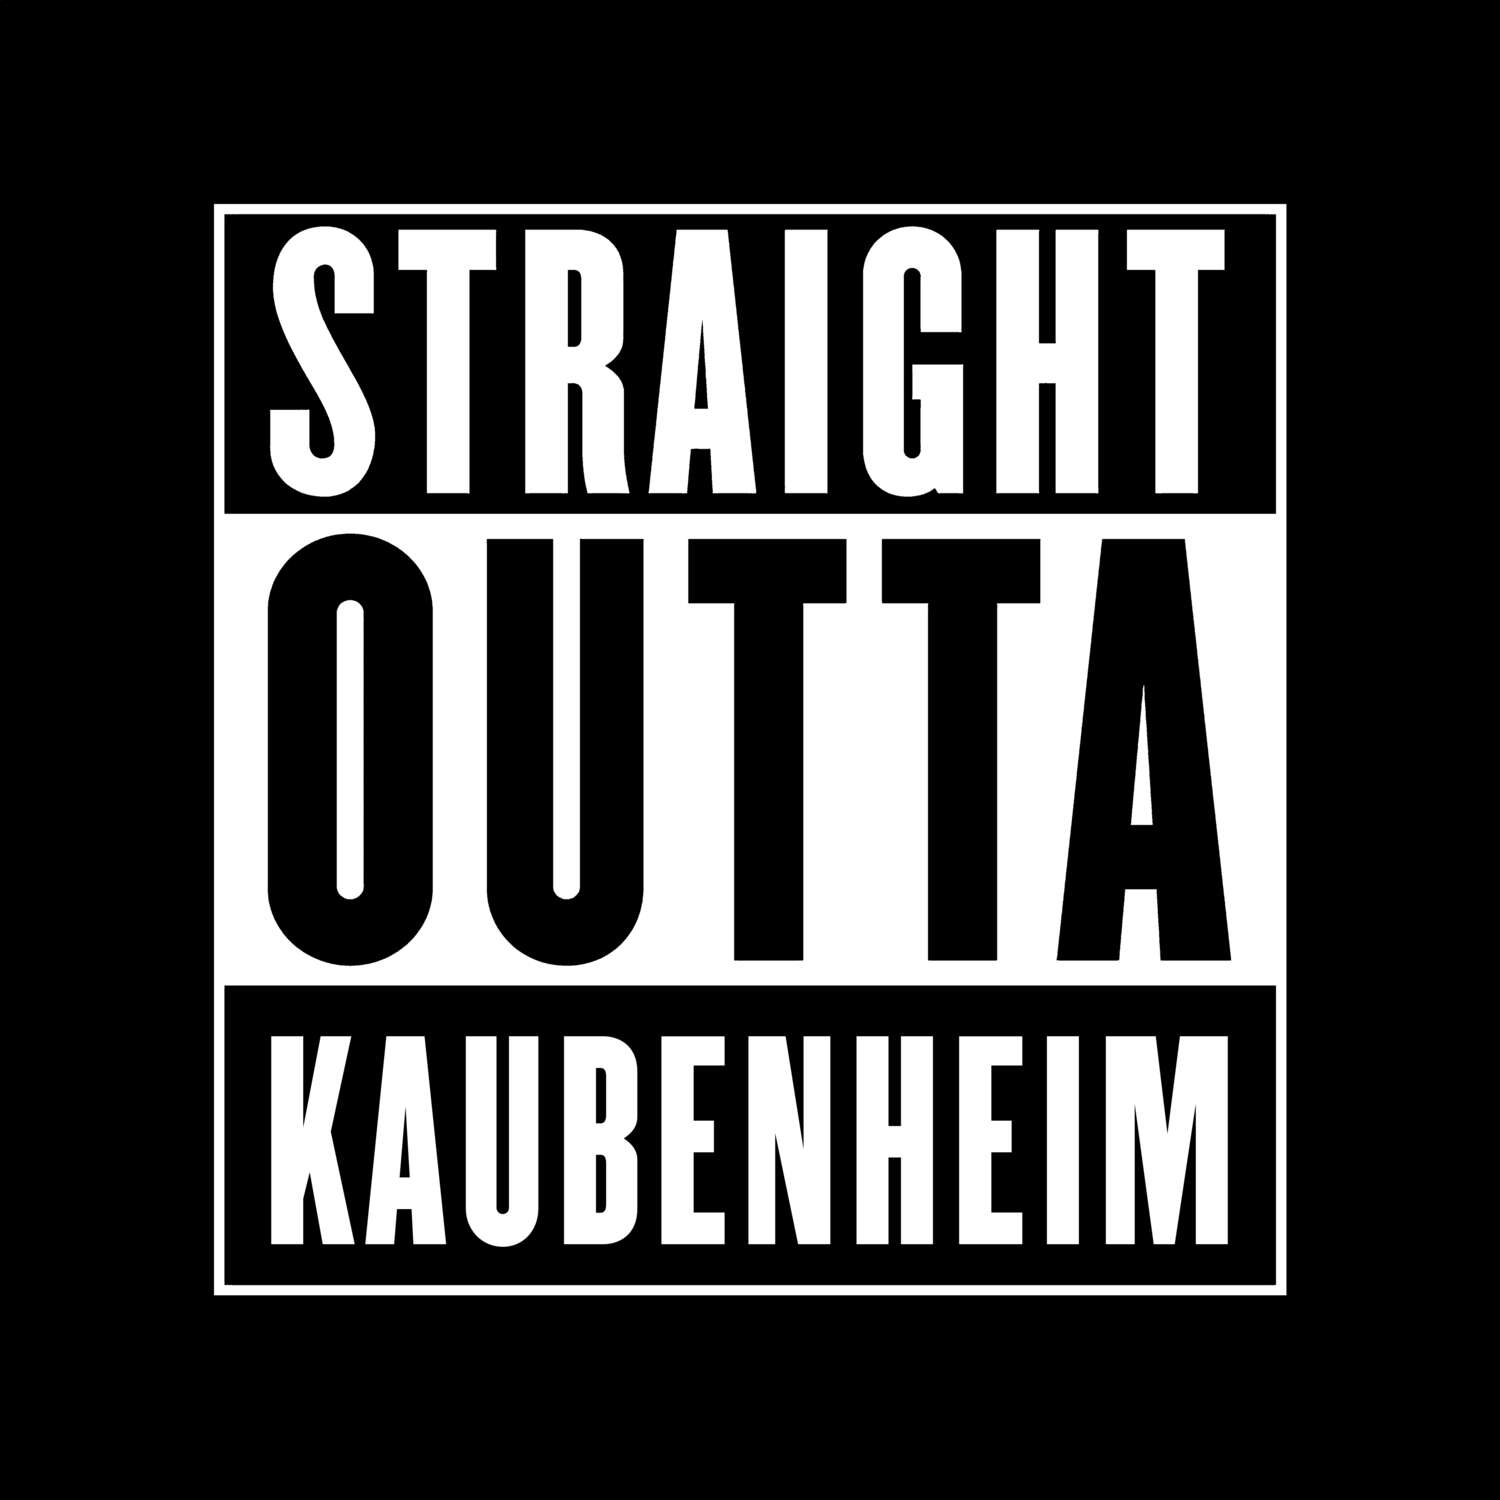 Kaubenheim T-Shirt »Straight Outta«